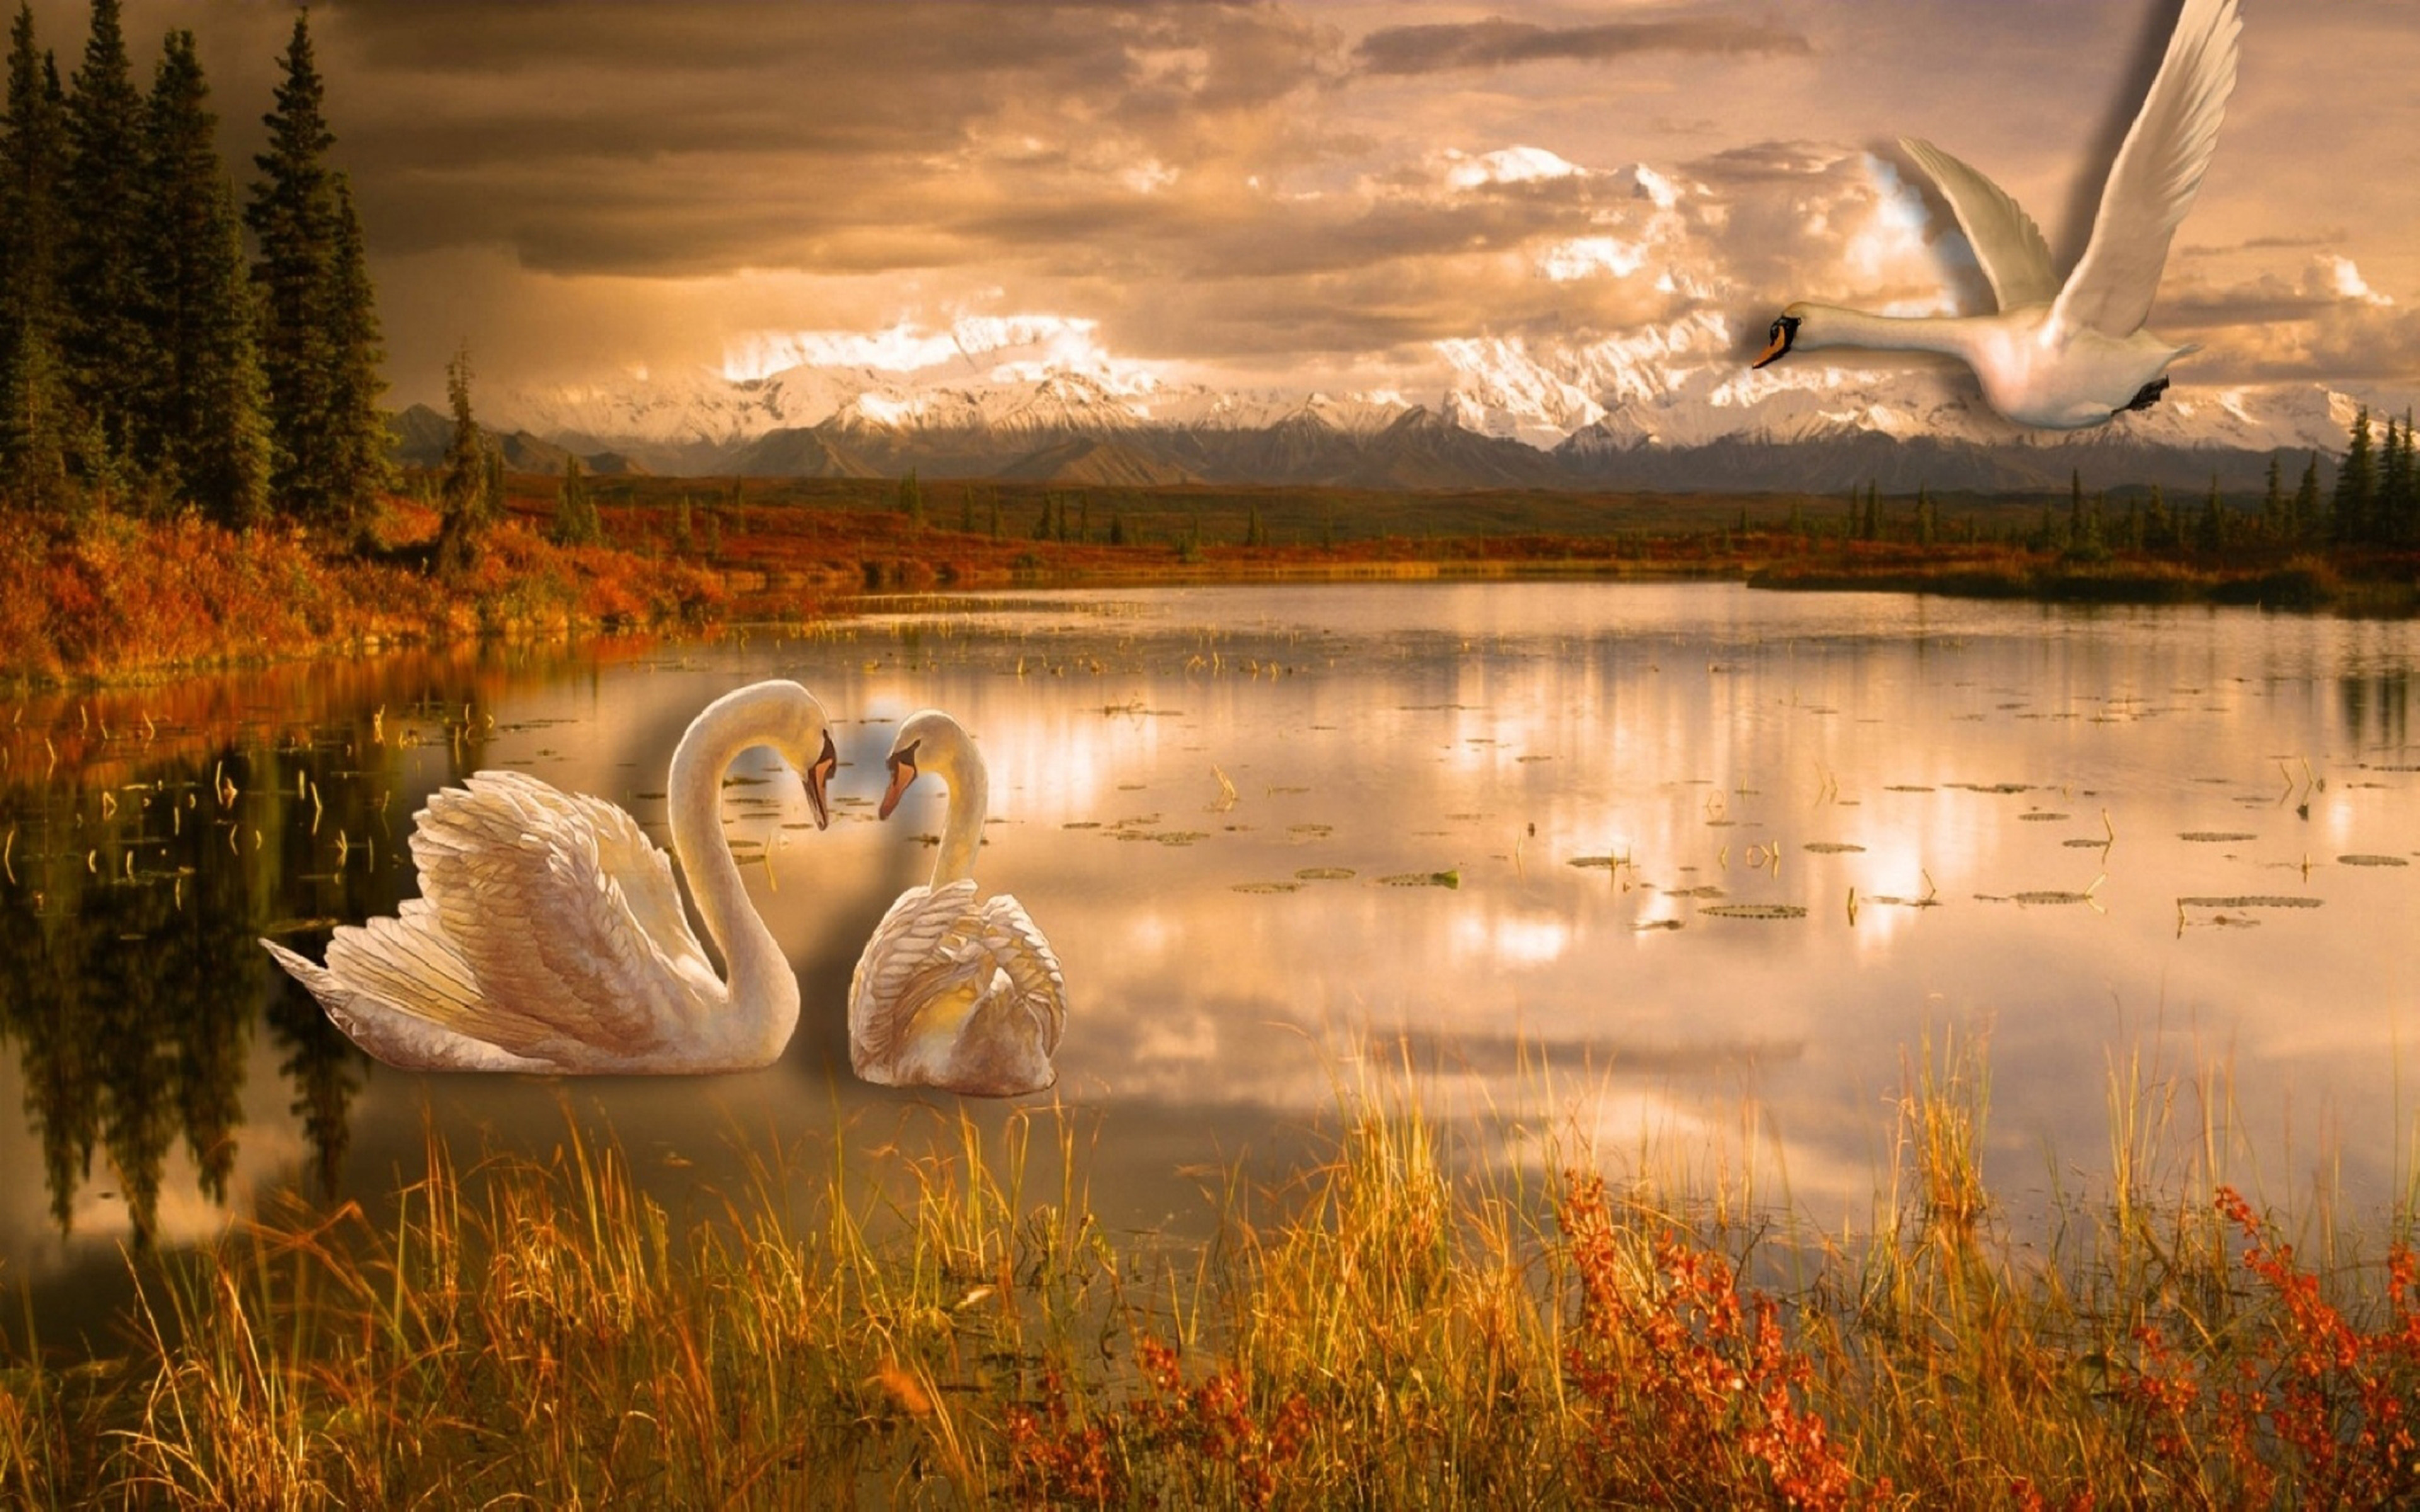 Swan Lake Romance Desktop Wallpaper Hd 3840x2400 : Wallpapers13.com